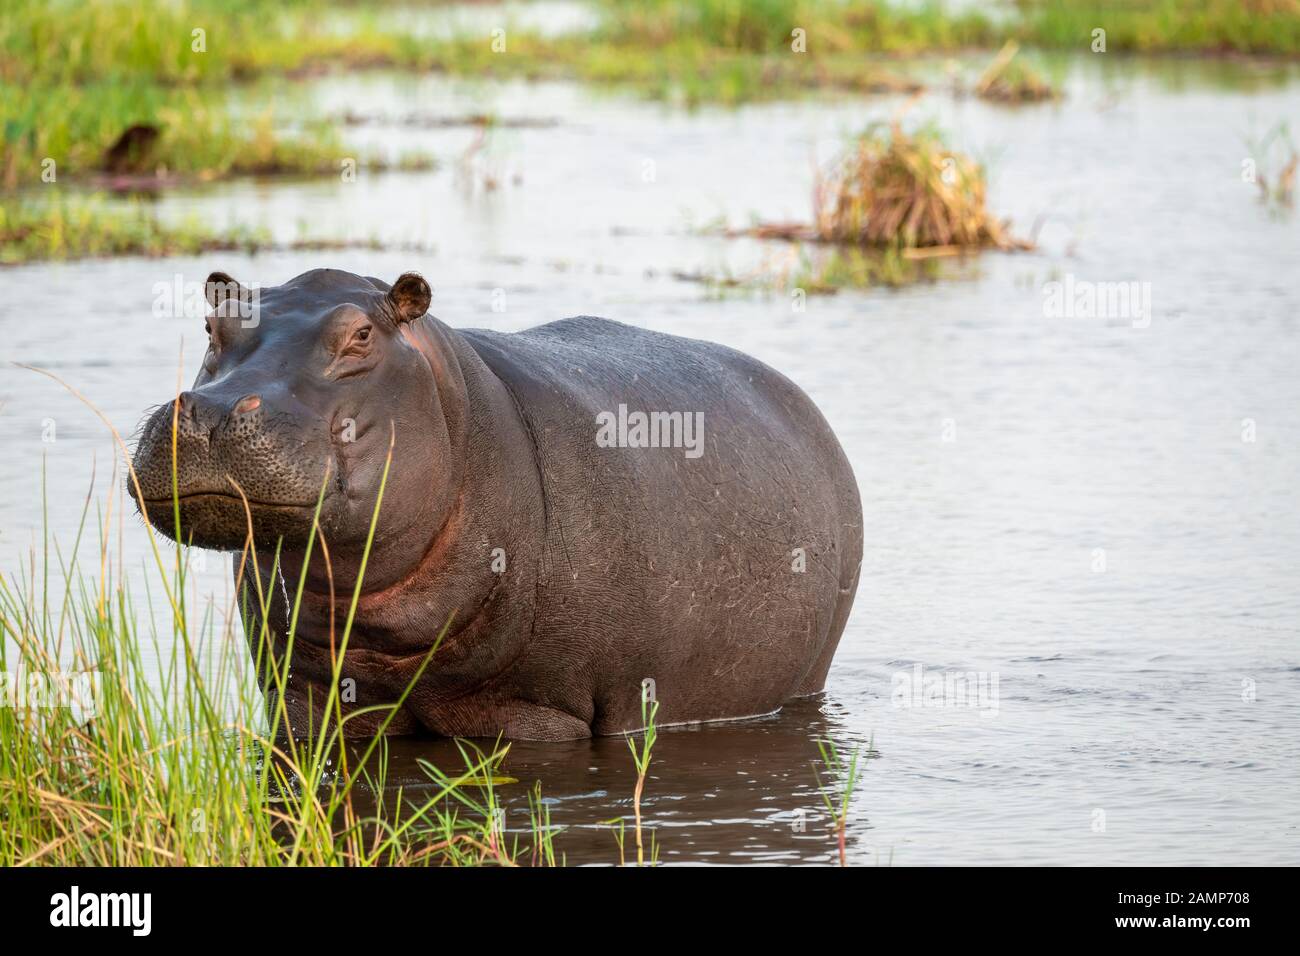 Hippopotame (Hippopotamus amphibius) se tenant dans des eaux peu profondes dans la Réserve de jeux de Moremi, dans le Delta d'Okavango, au Botswana, en Afrique australe Banque D'Images